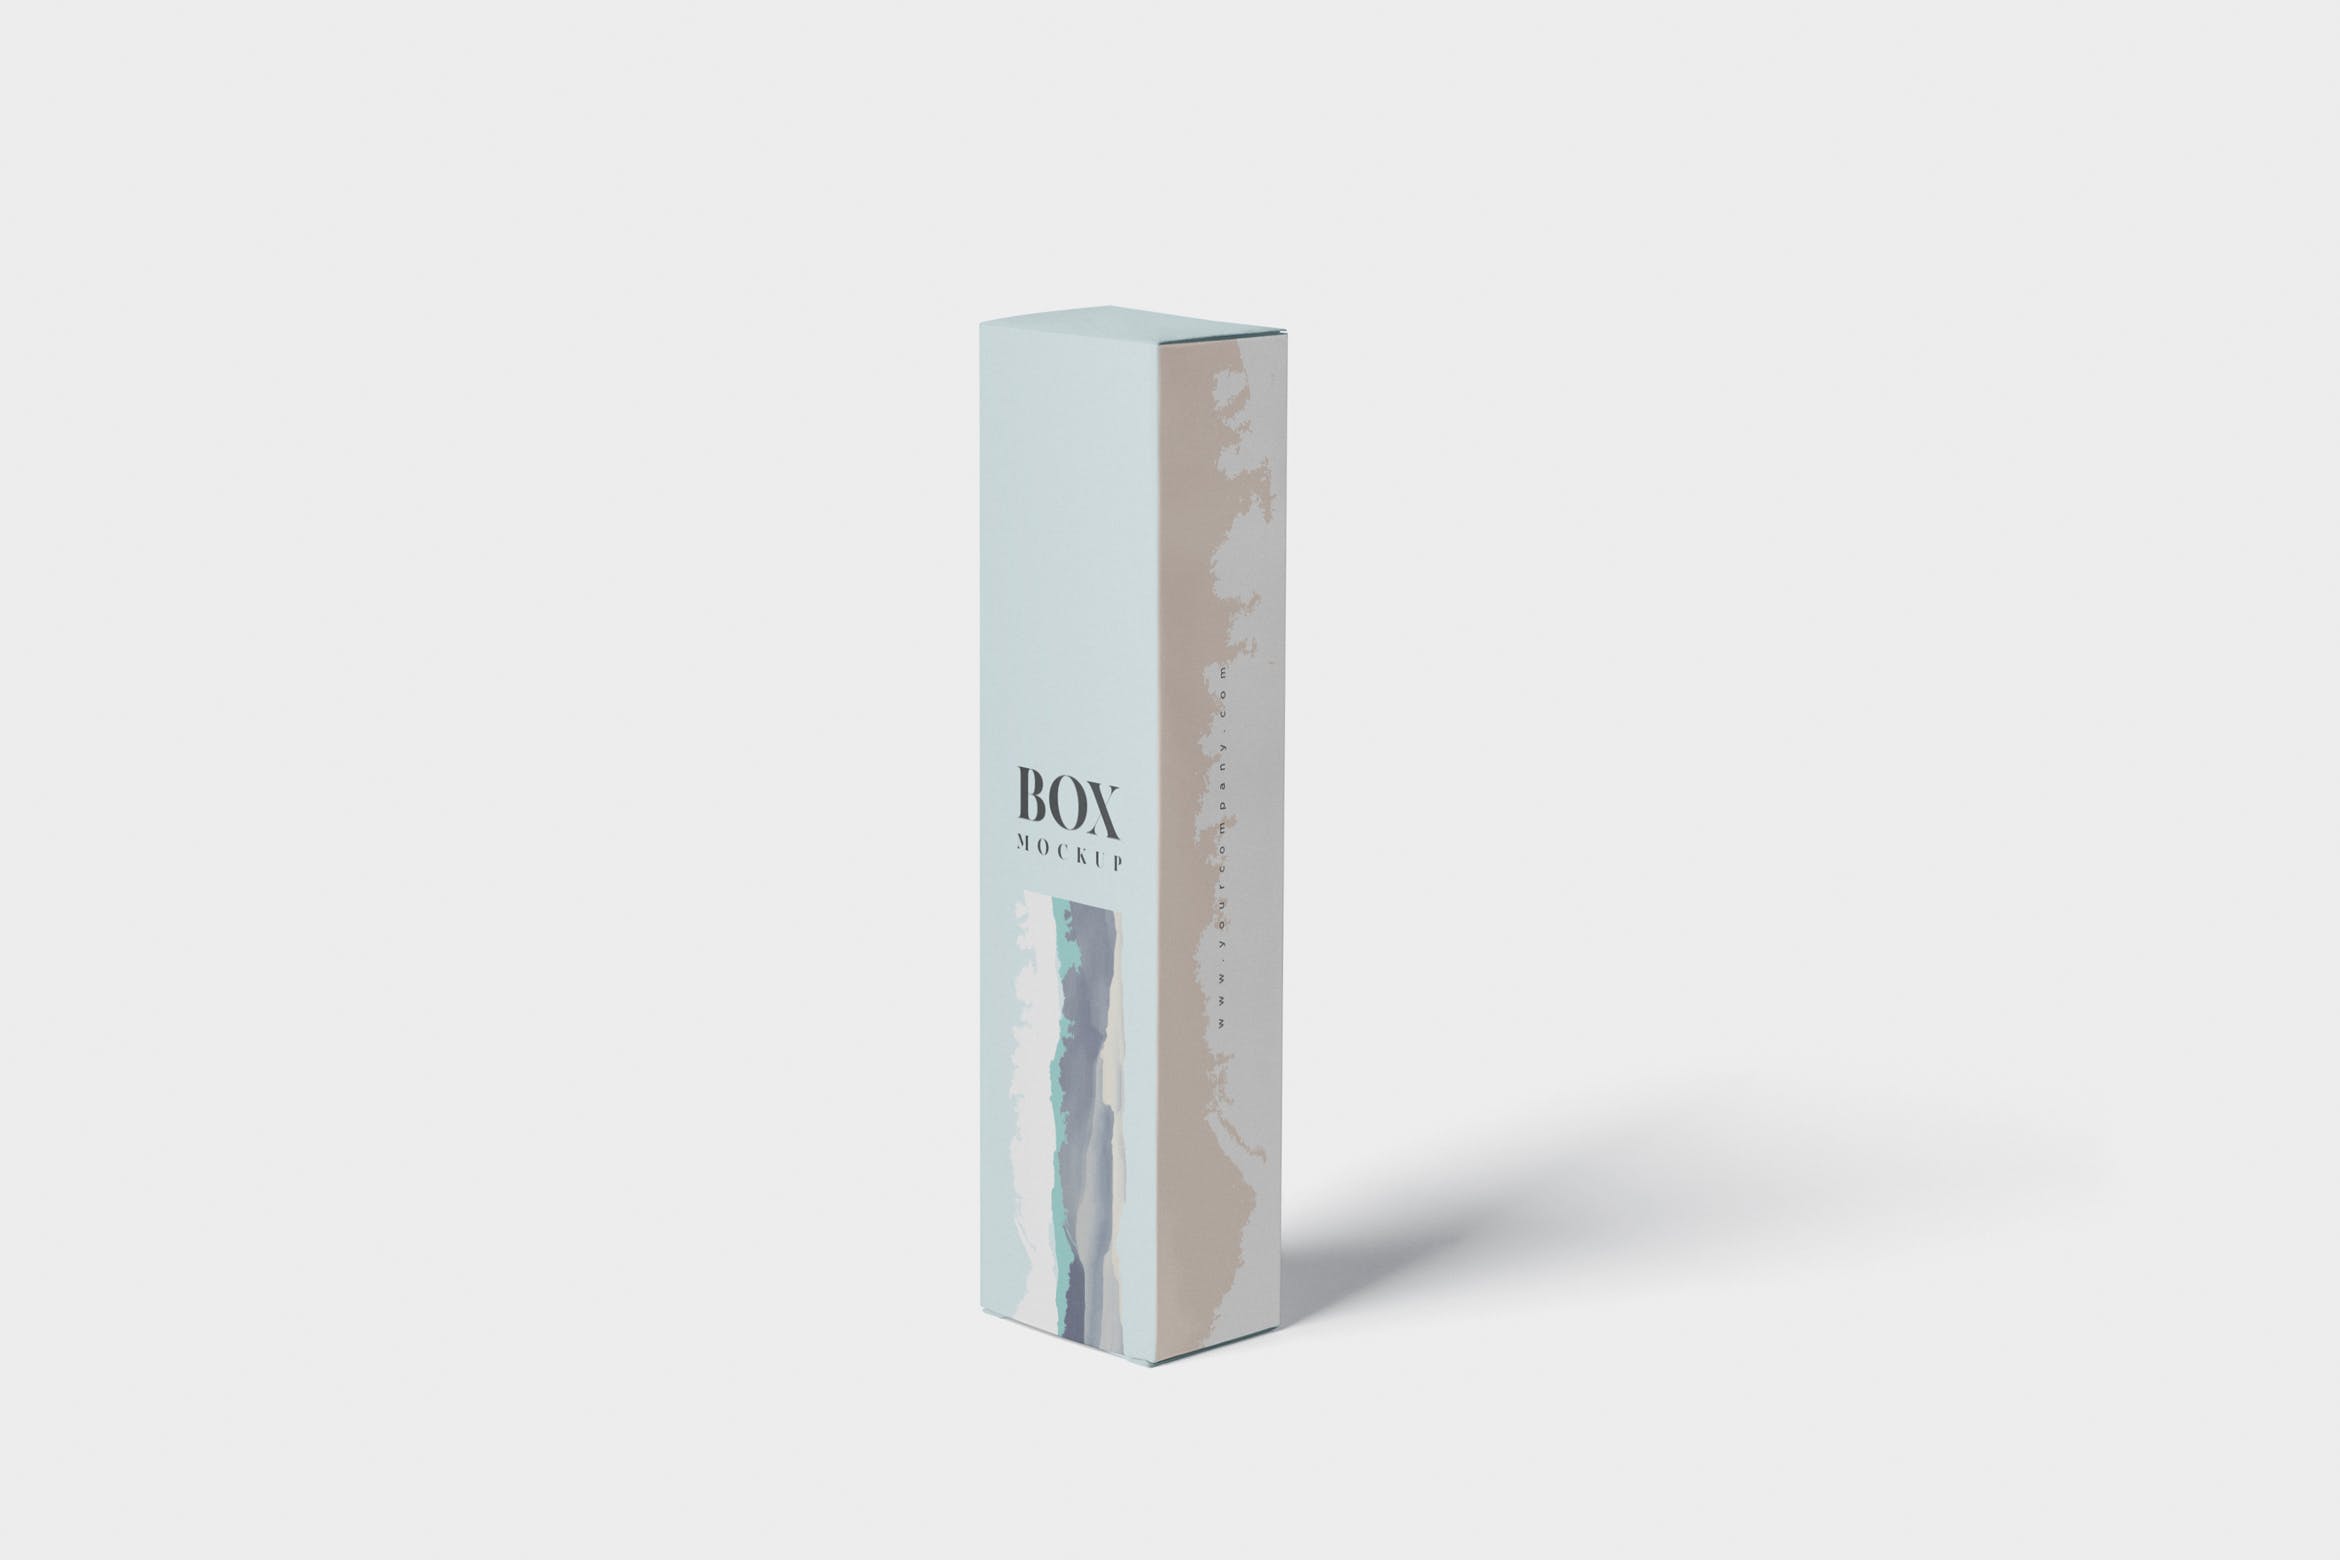 长条形化妆品/护肤品包装纸盒设计图样机 Box Mockup – Slim High Rectangle Shape插图